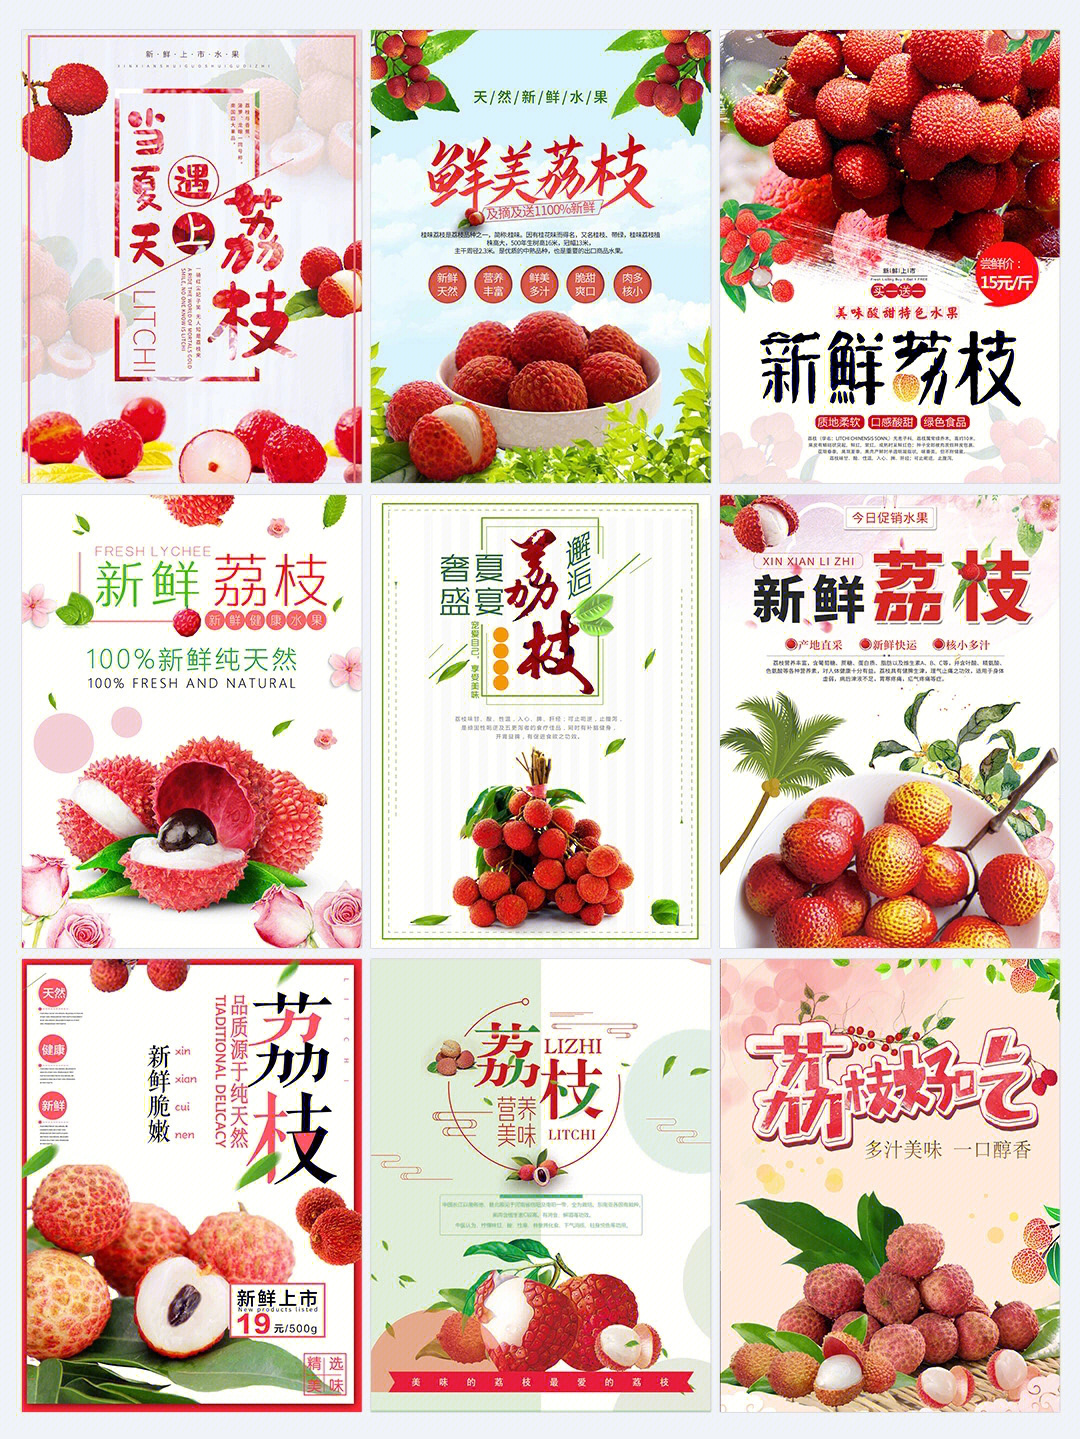 新鲜美味荔枝61水果宣传海报61荔枝海报分享